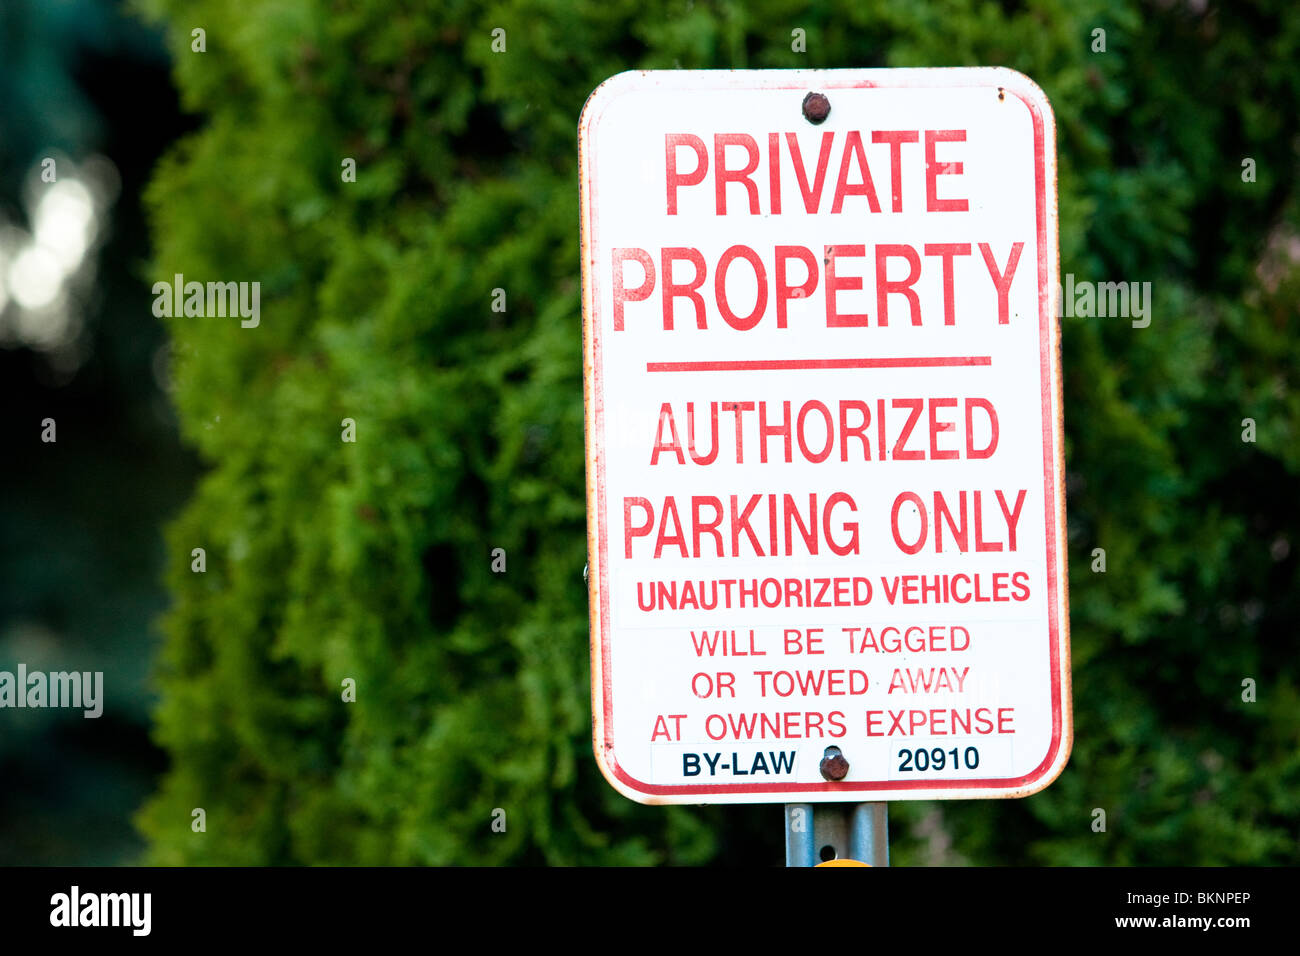 La propiedad privada de aparcamiento autorizado único signo de vehículos no autorizados serán etiquetadas o remolcado a expensas del propietario Foto de stock